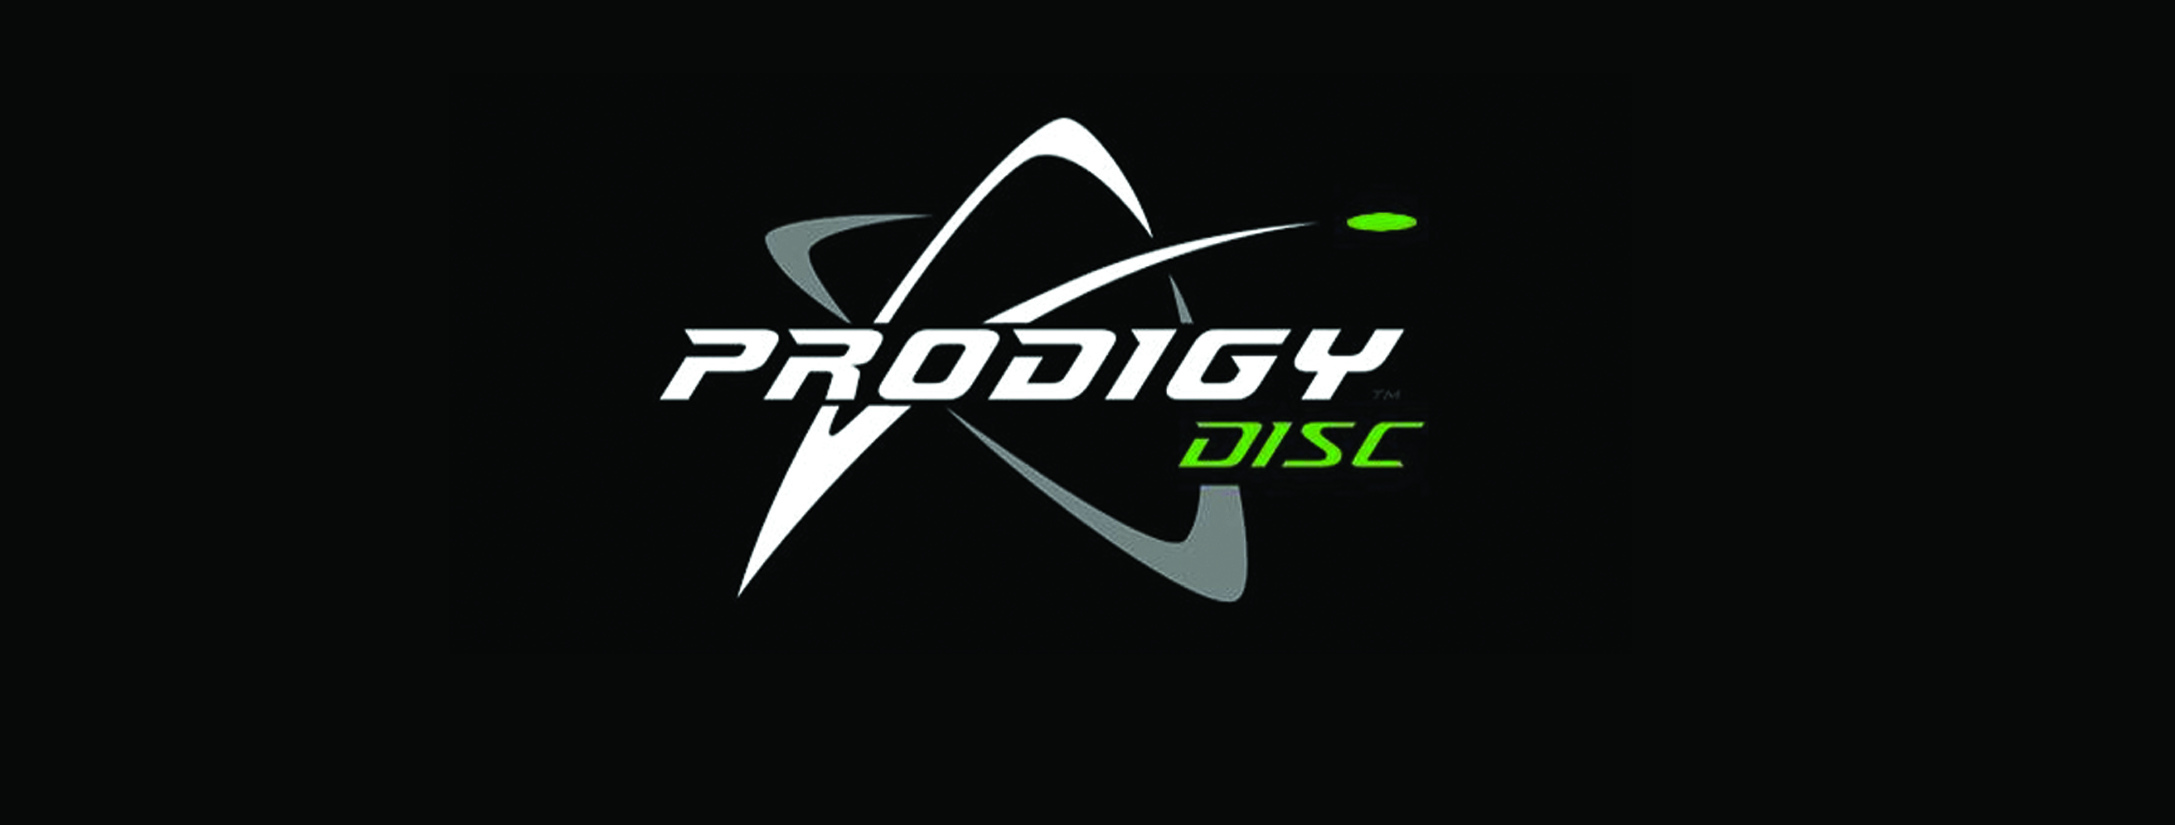 Prodigy Discs in Buffalo NY